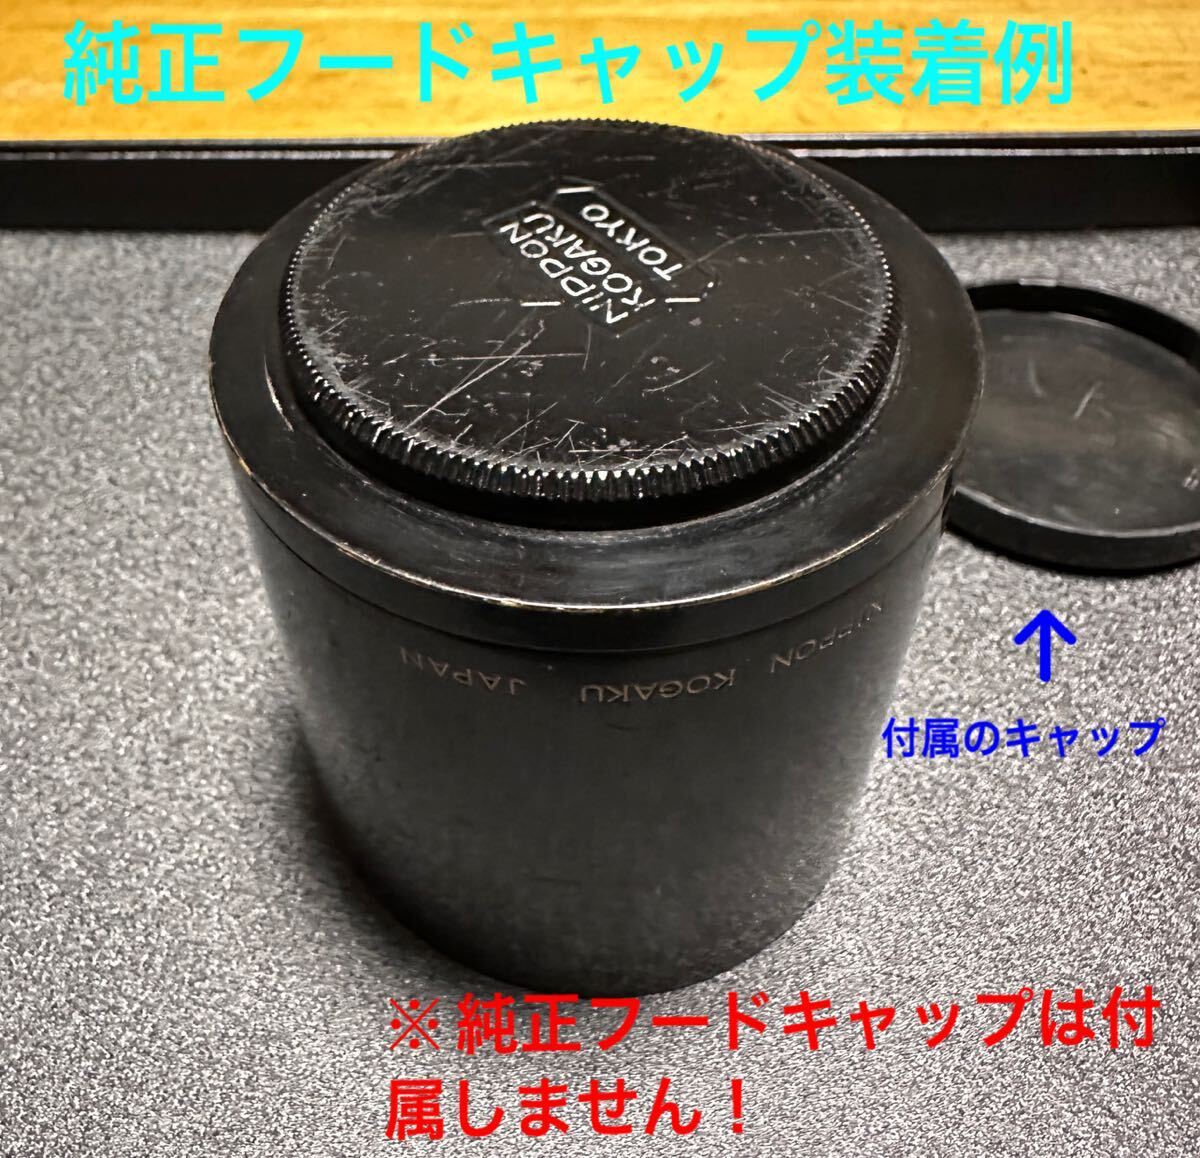 Nikon ニコン Nikkor-Q・C 25cm f4 フード 日本光学 Nippon Kogaku Sマウント レフボックス 純正フードの画像6